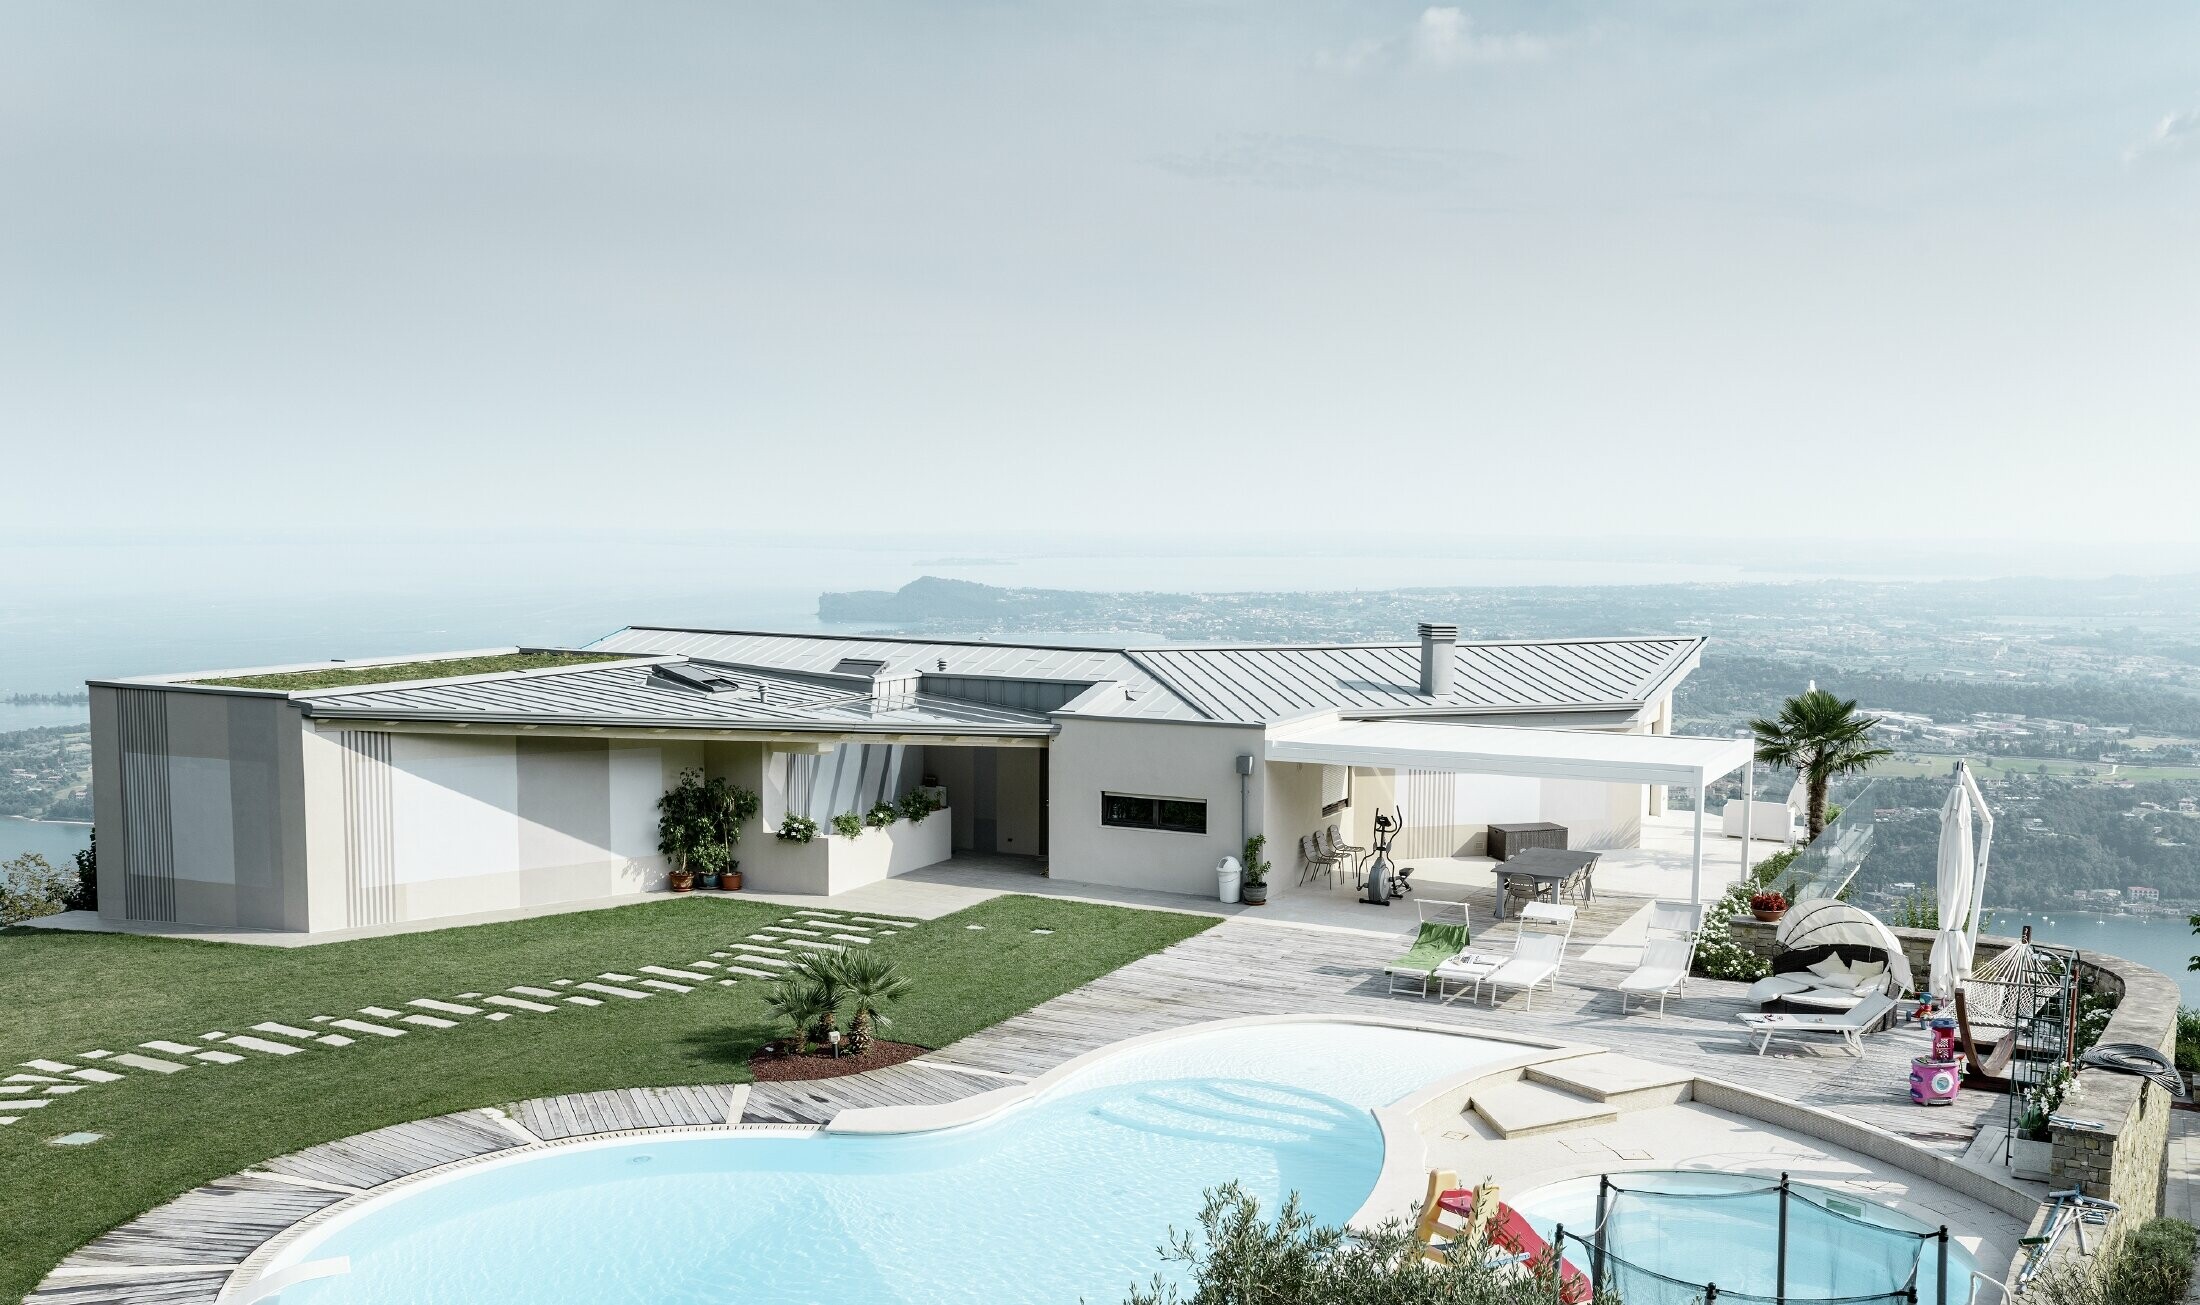 Villa met prachtig zicht op de omgeving, groot terras, zwembad en dak met staande naad in patinagrijs